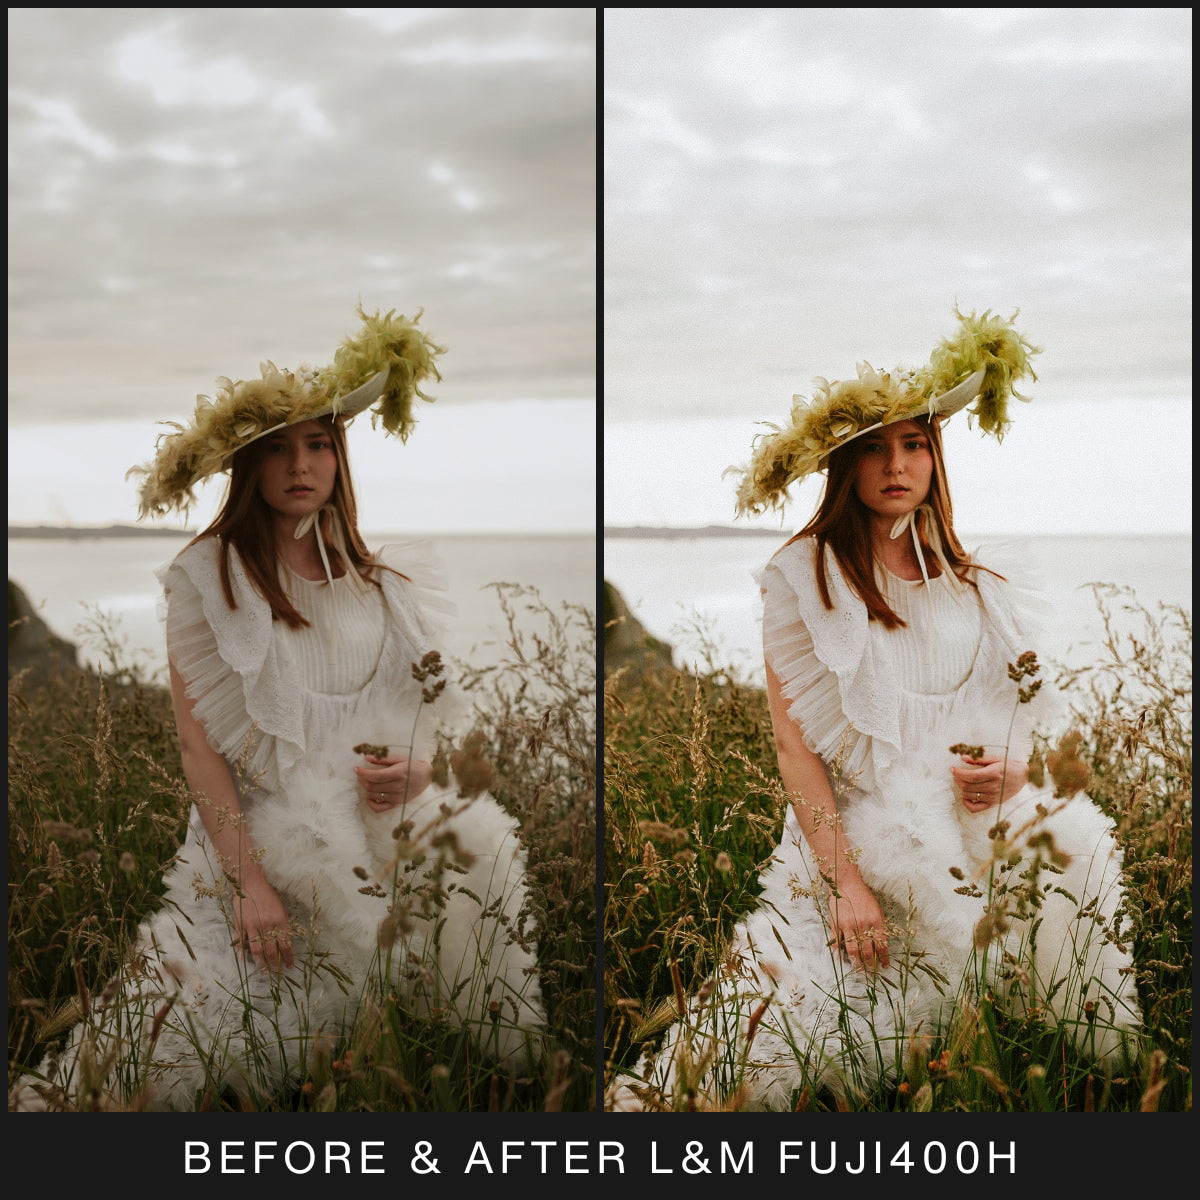  FujiFilm Film Filter Lightroom Presets For Adobe Lightroom Mobile & Desktop By Lou And Marks Presets Photographer